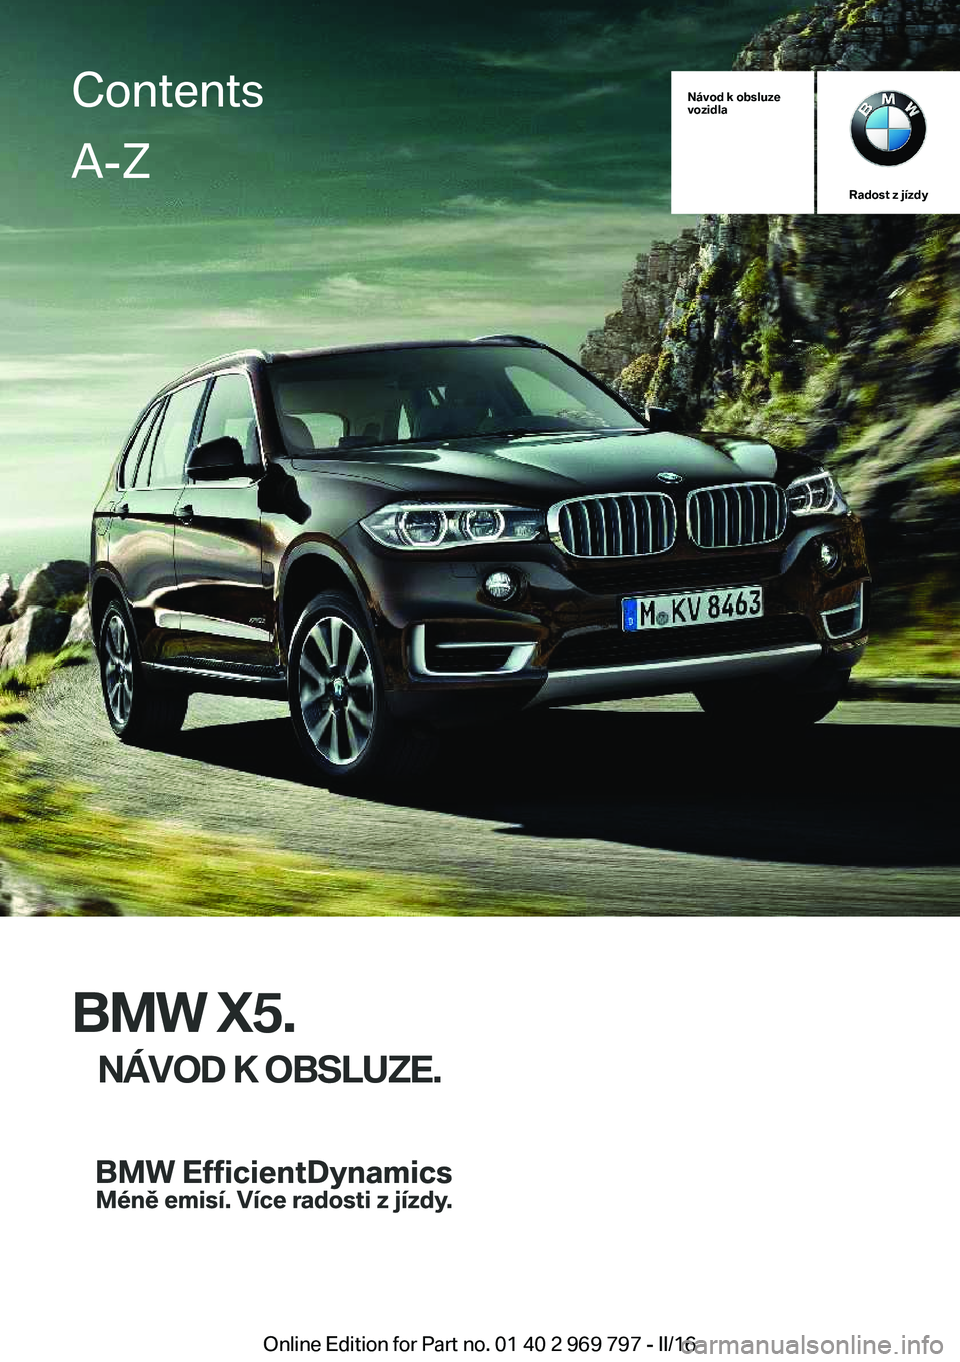 BMW X5 2016  Návod na použití (in Czech) Návod k obsluze
vozidla
Radost z jízdy
BMW X5.
NÁVOD K OBSLUZE.
ContentsA-Z
Online Edition for Part no. 01 40 2 969 797 - II/16   